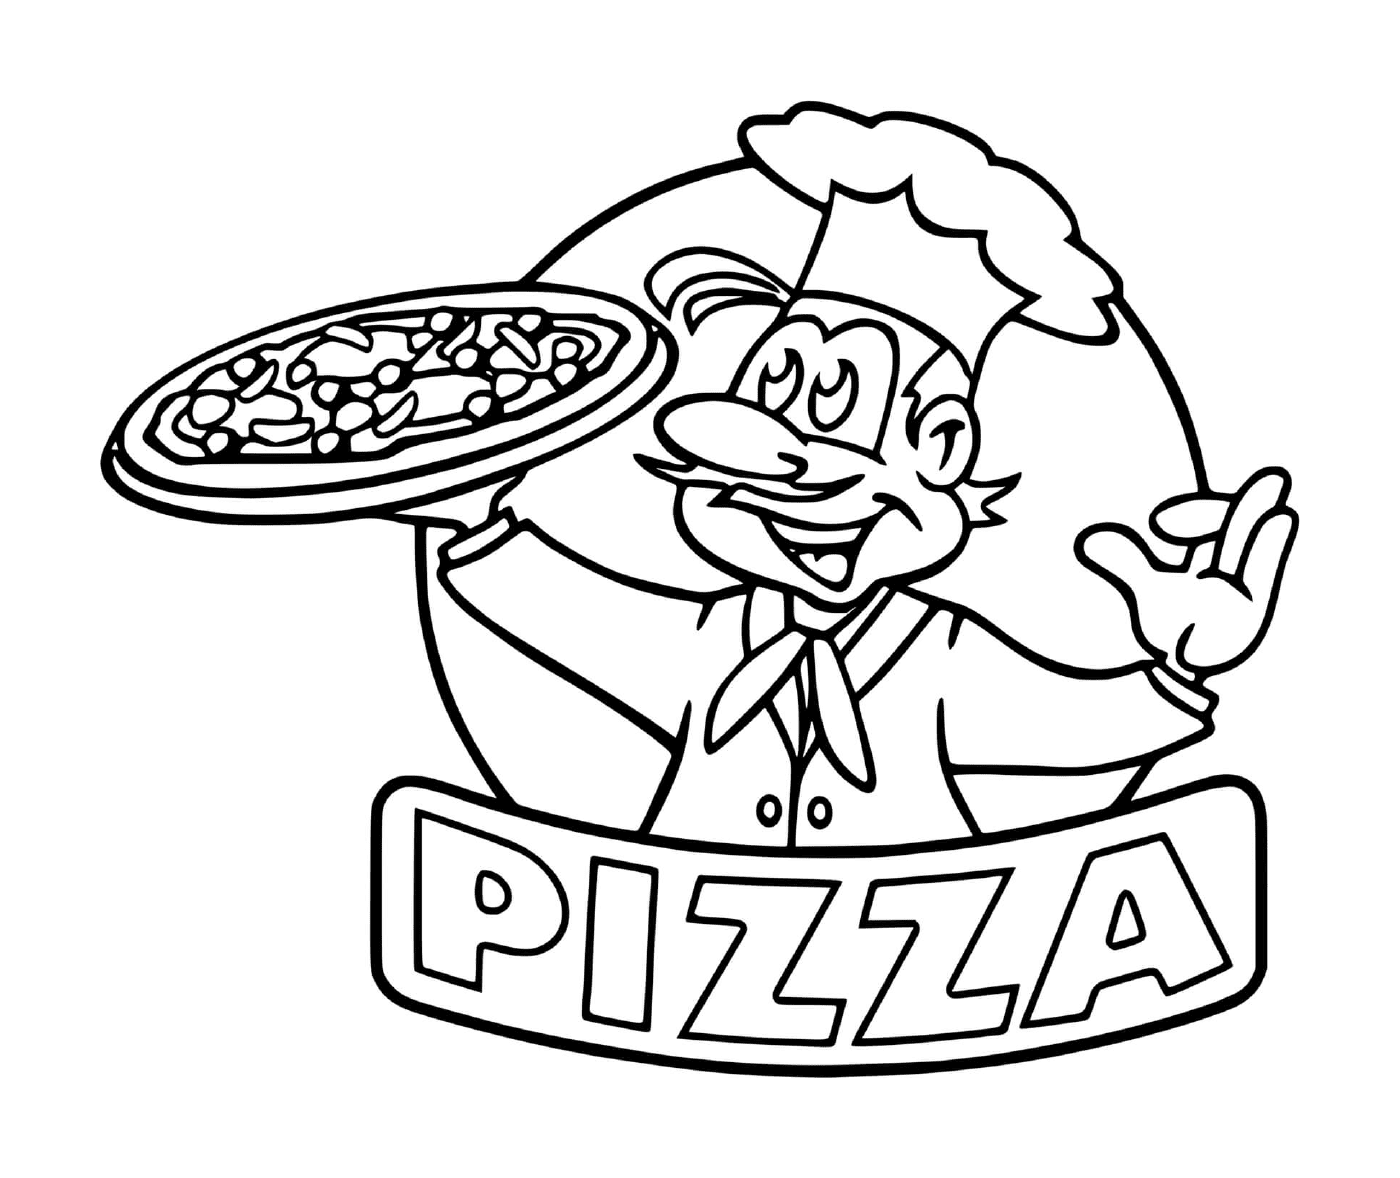  Das Logo des Pizzarestaurants 